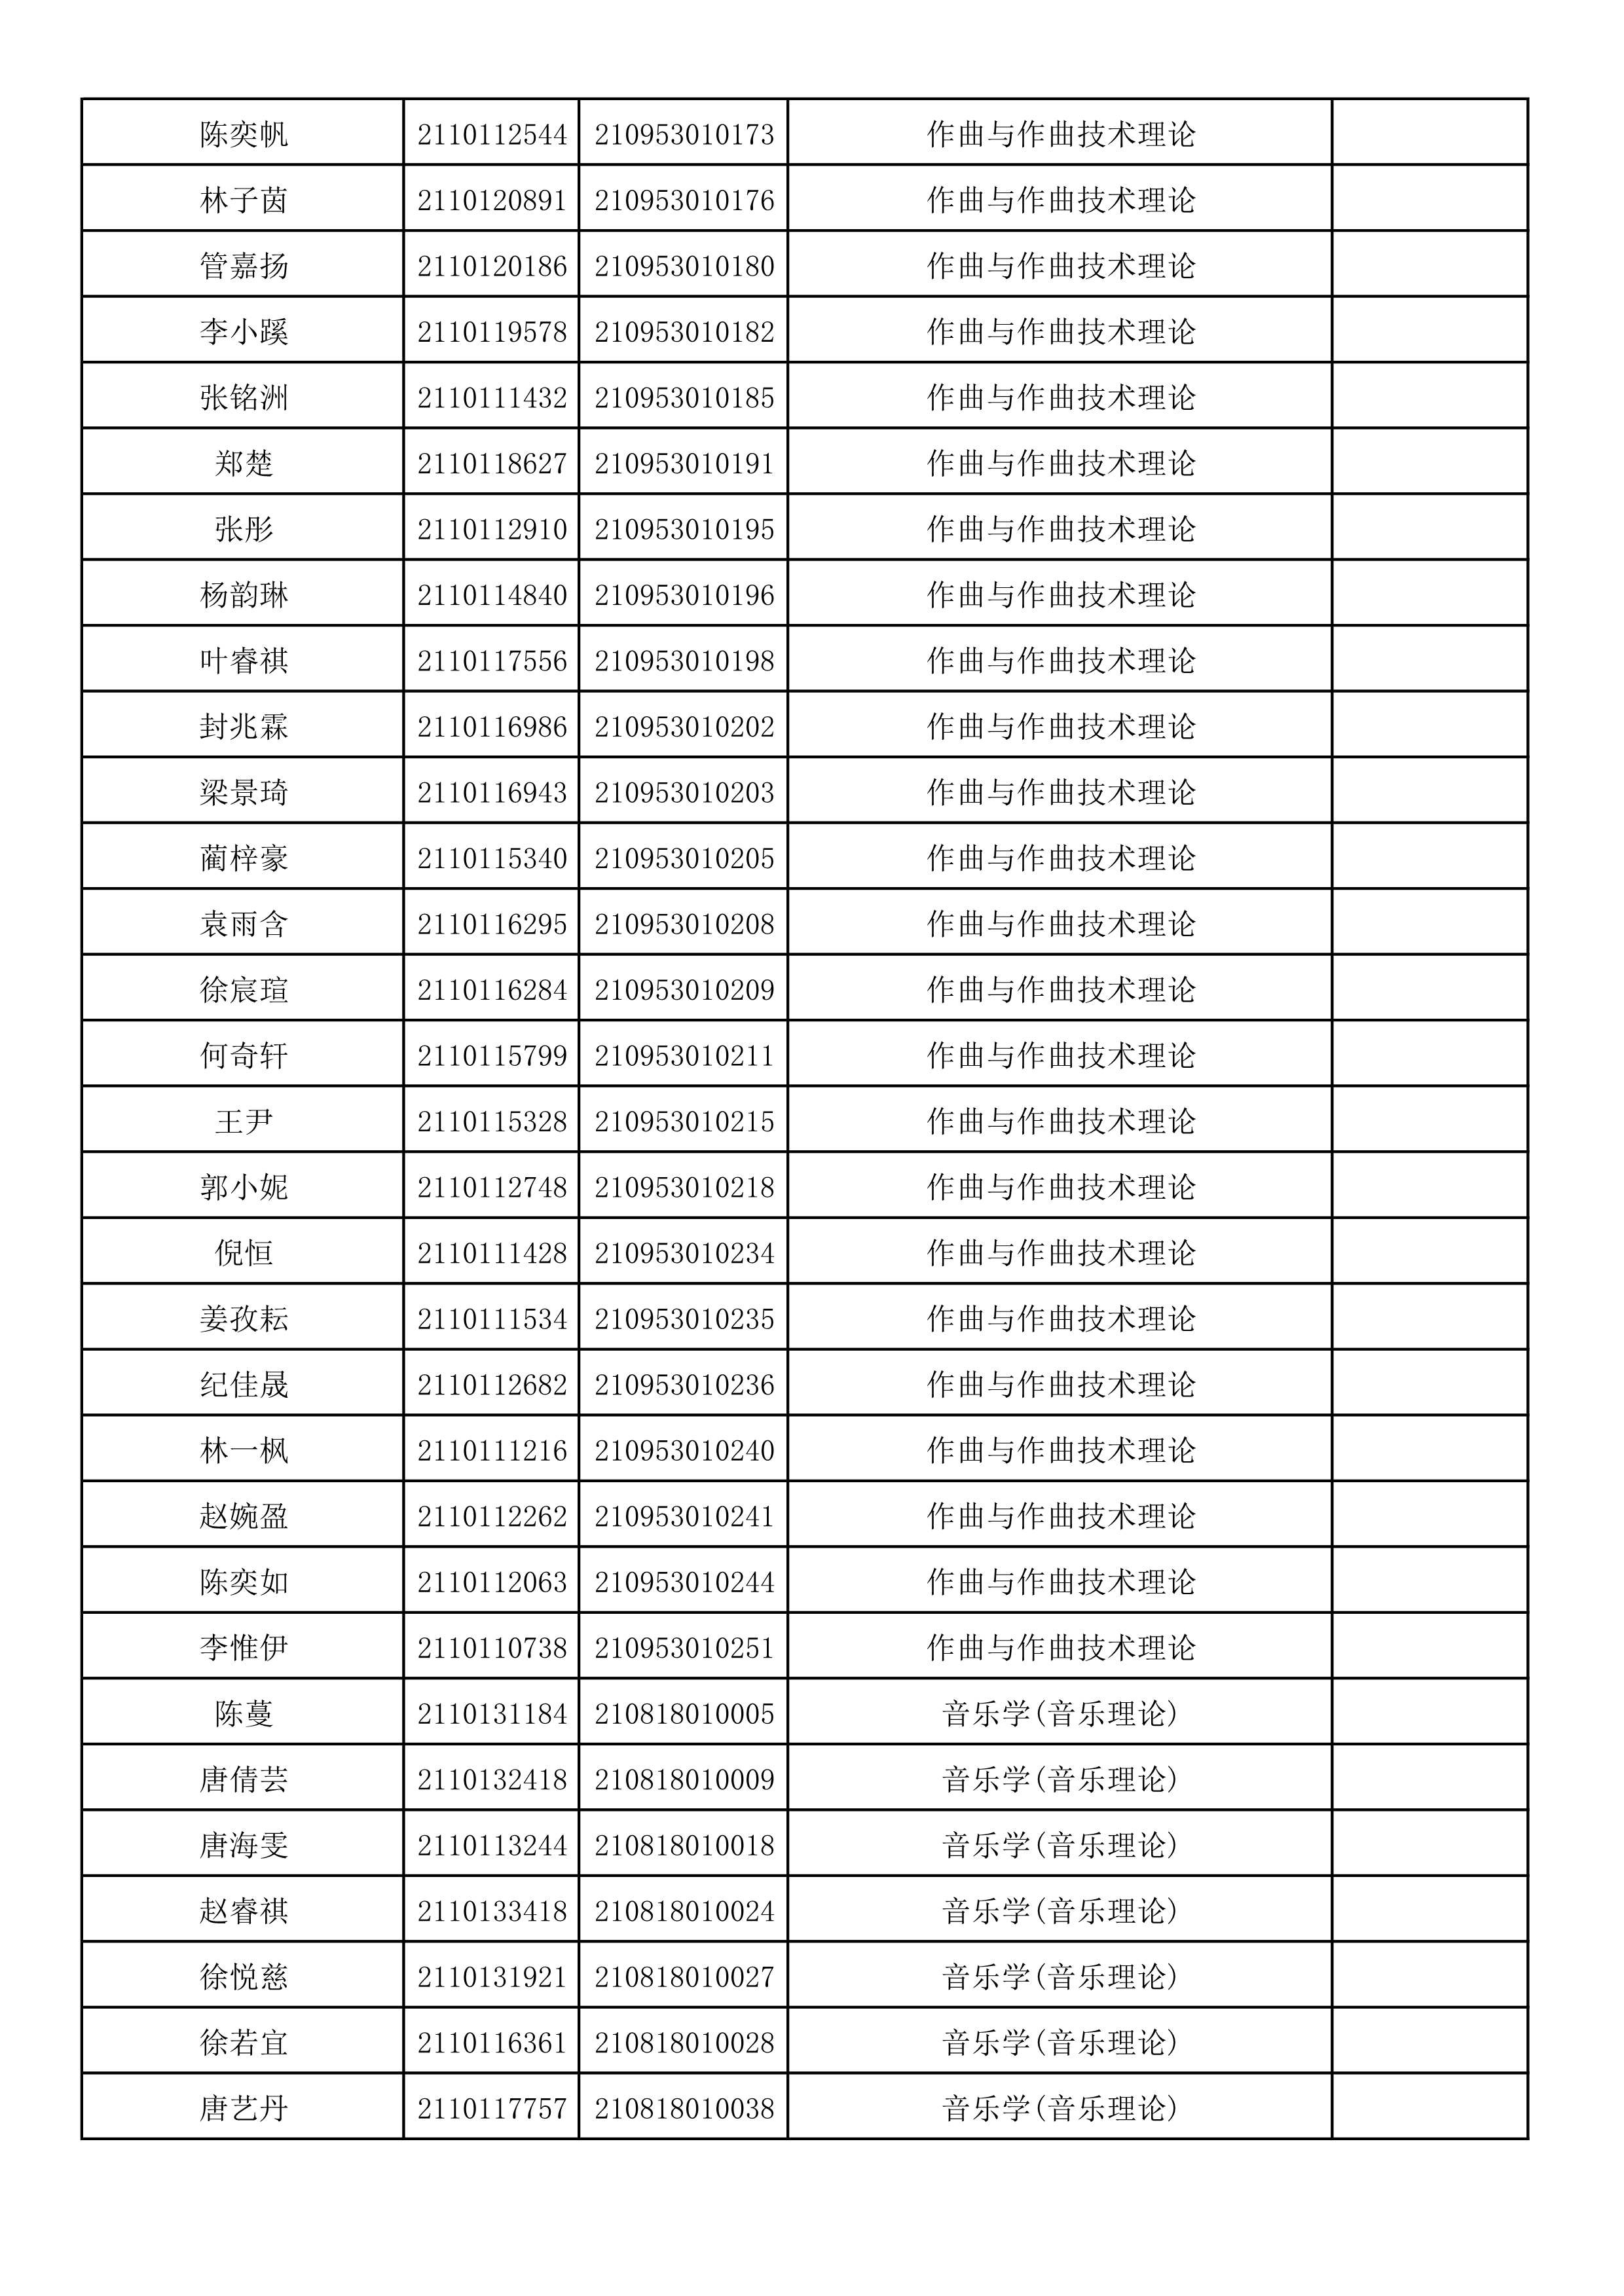 附件2：浙江音乐学院2021年本科招生专业校考初试合格考生名单_6.png